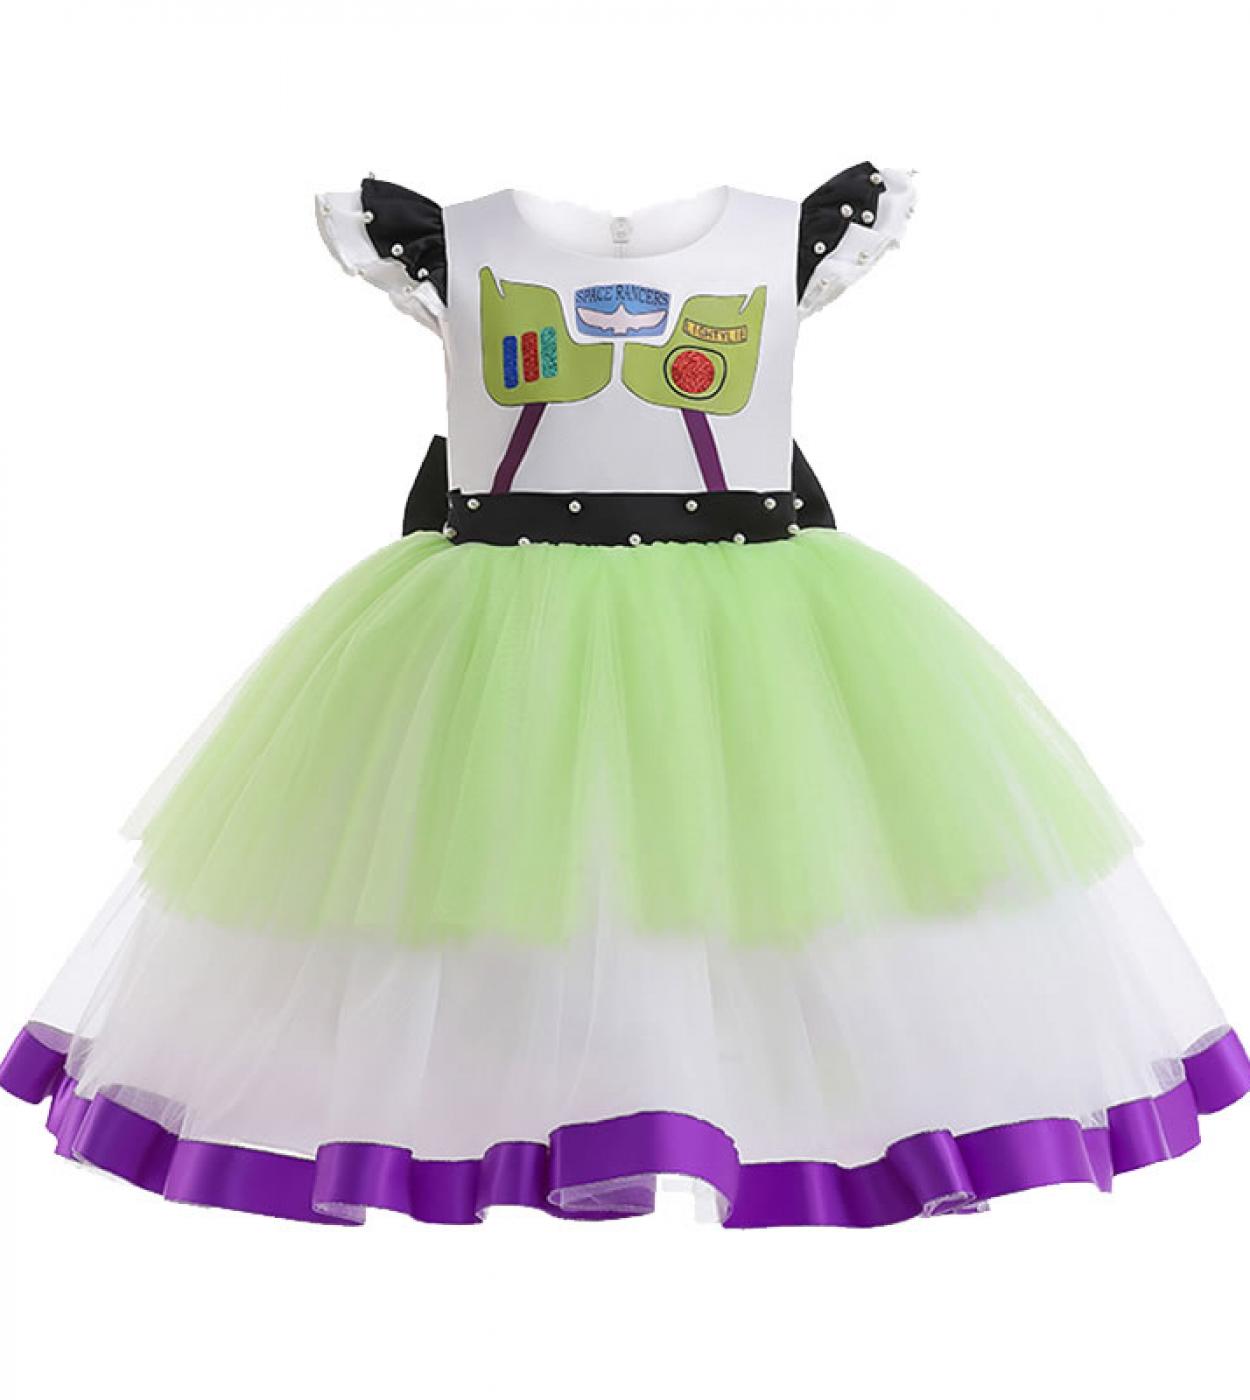 2022 verano Buzz Lightyear vestido de encaje para bebé niña Cosplay disfraz festivo chico Up Bow princesa fiesta túnica niños Fr